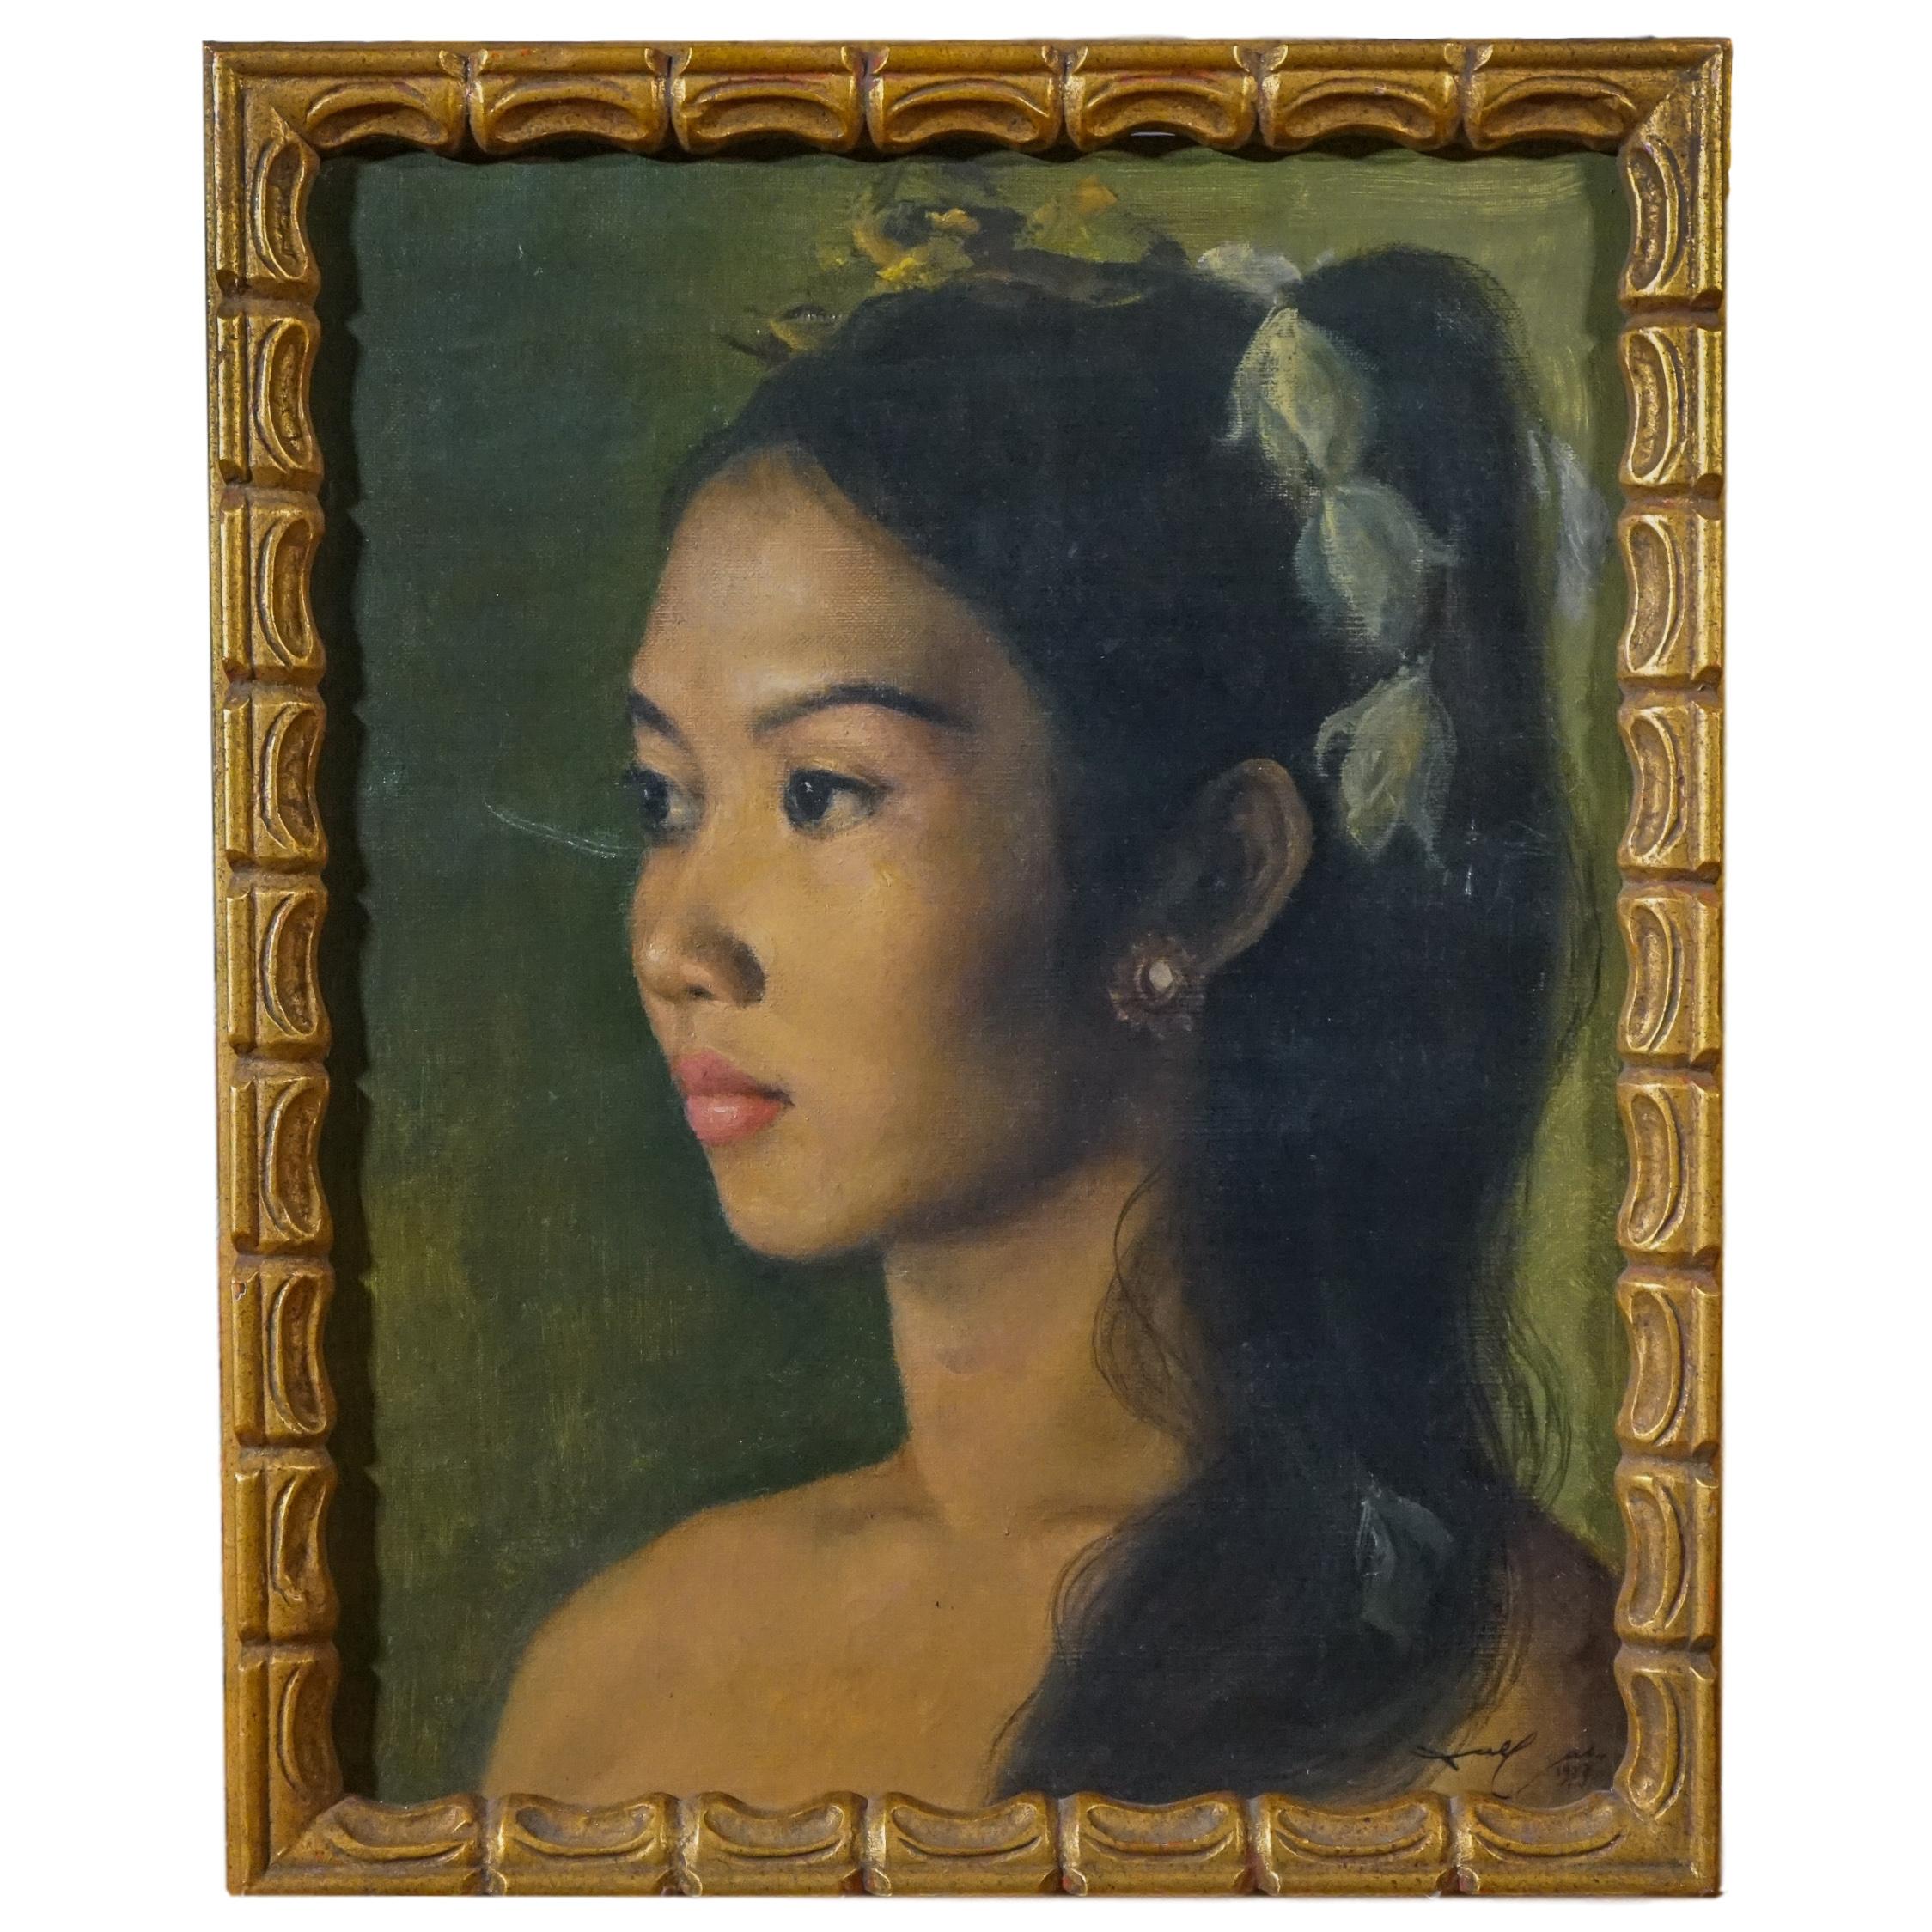 Portrait Painting DULLAH - Portrait réaliste d'une jeune fille balinaise, princesse de beauté indonésienne